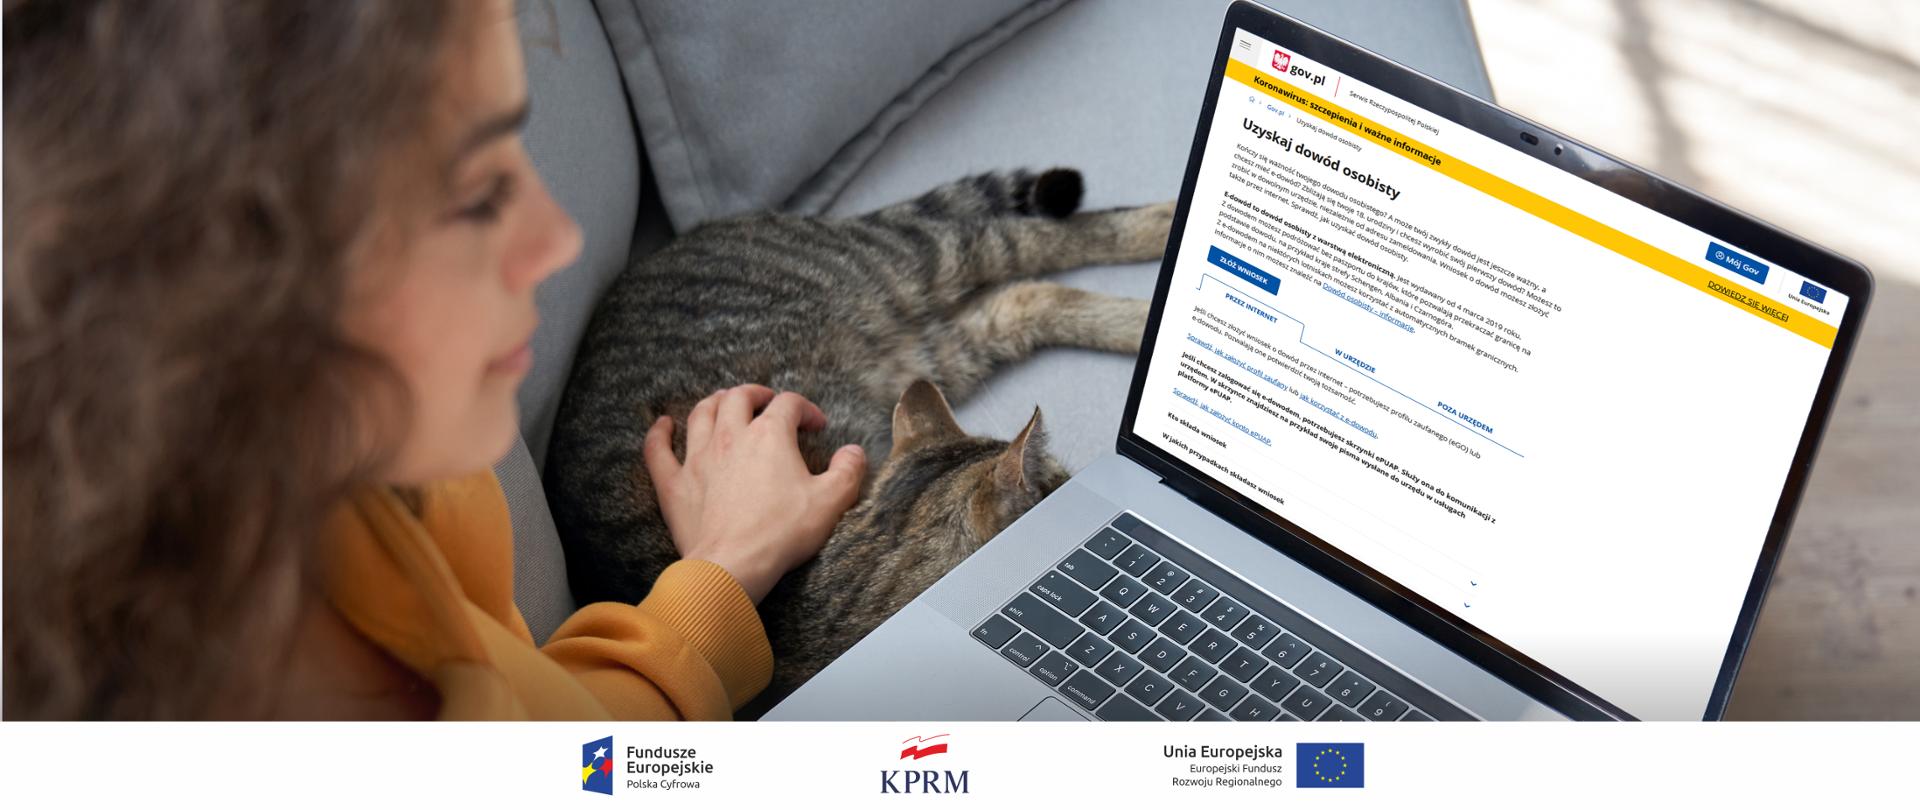 Młoda kobieta siedzi na kanapie, przed nią laptop z otwartą stroną GOV.pl i e-usługą "Uzyskaj dowód osobisty". Po lewej stronie laptopa - na kanapie leży kot. Kobieta głaszcze go lewą ręką.